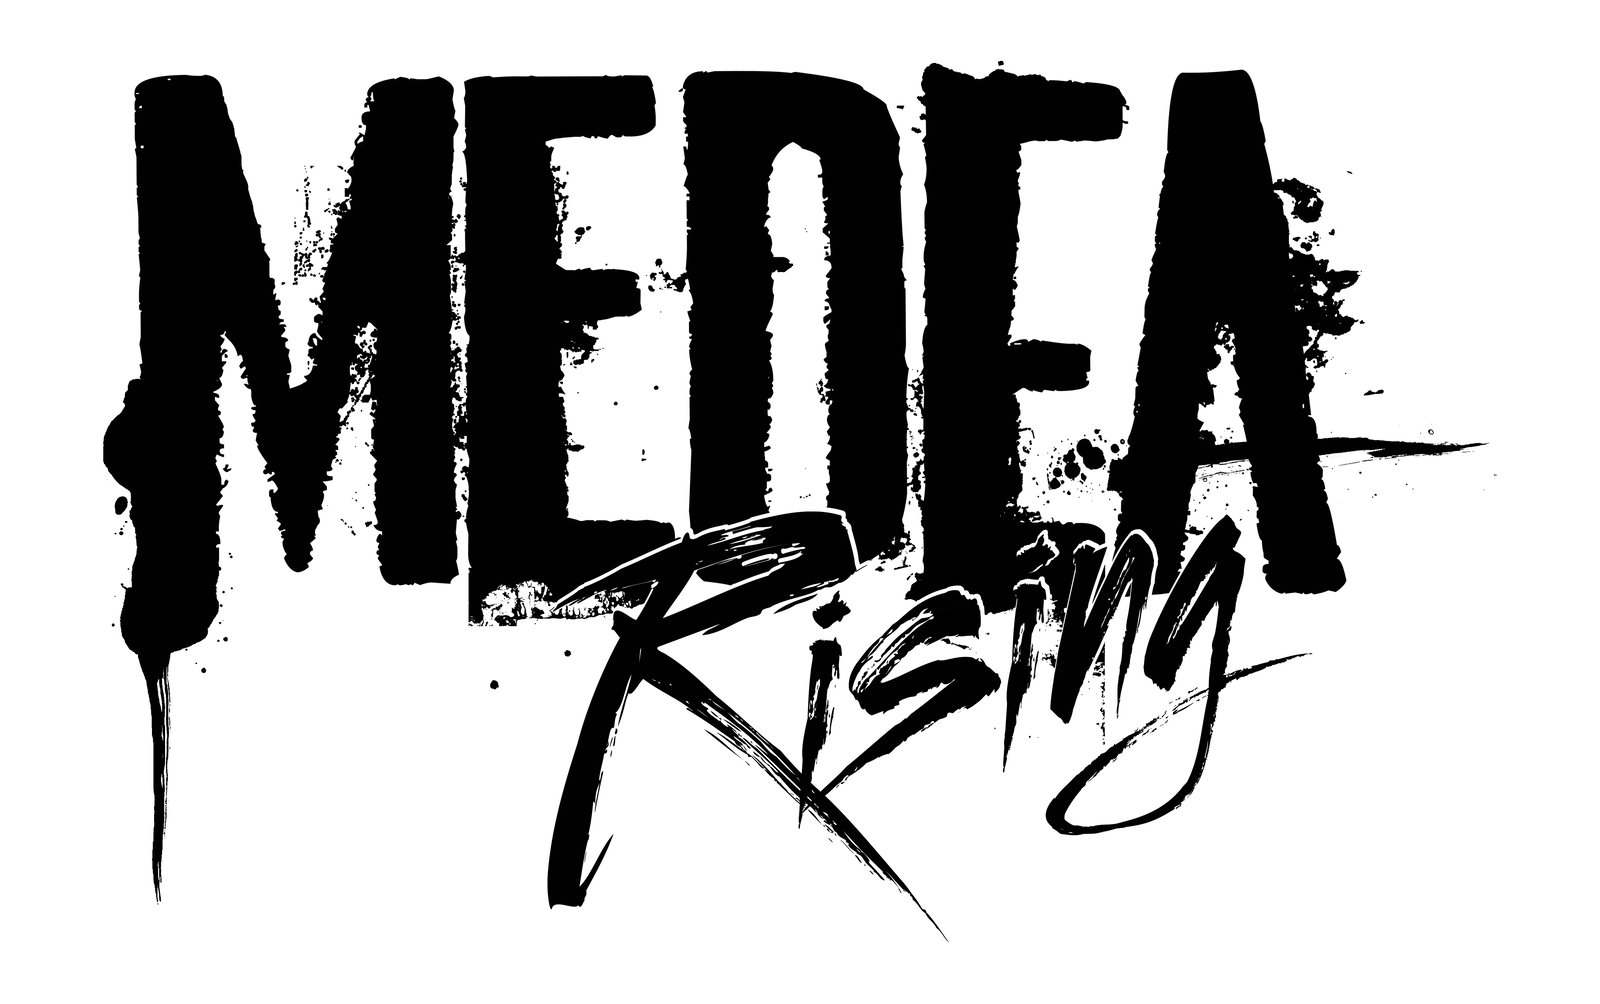 Medea Rising